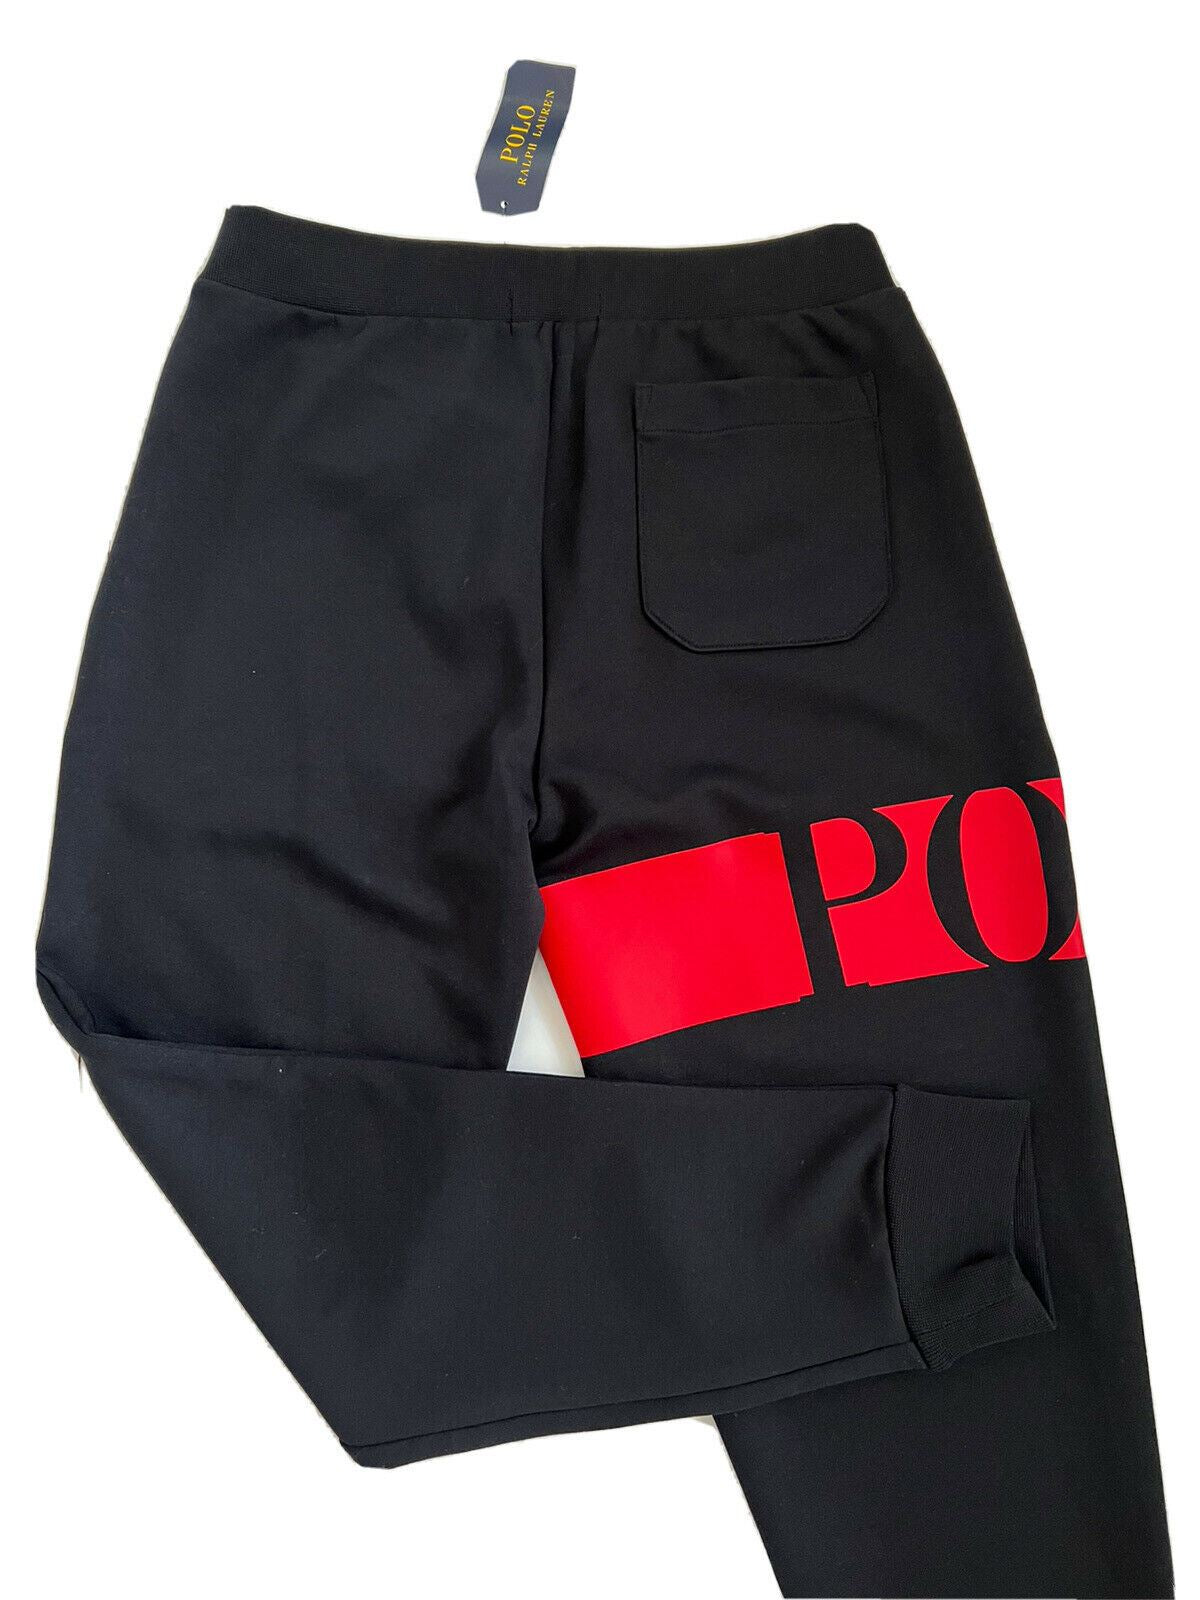 Мужские большие черные повседневные брюки с логотипом Polo Ralph Lauren NWT, маленькие размеры, 125 долларов США